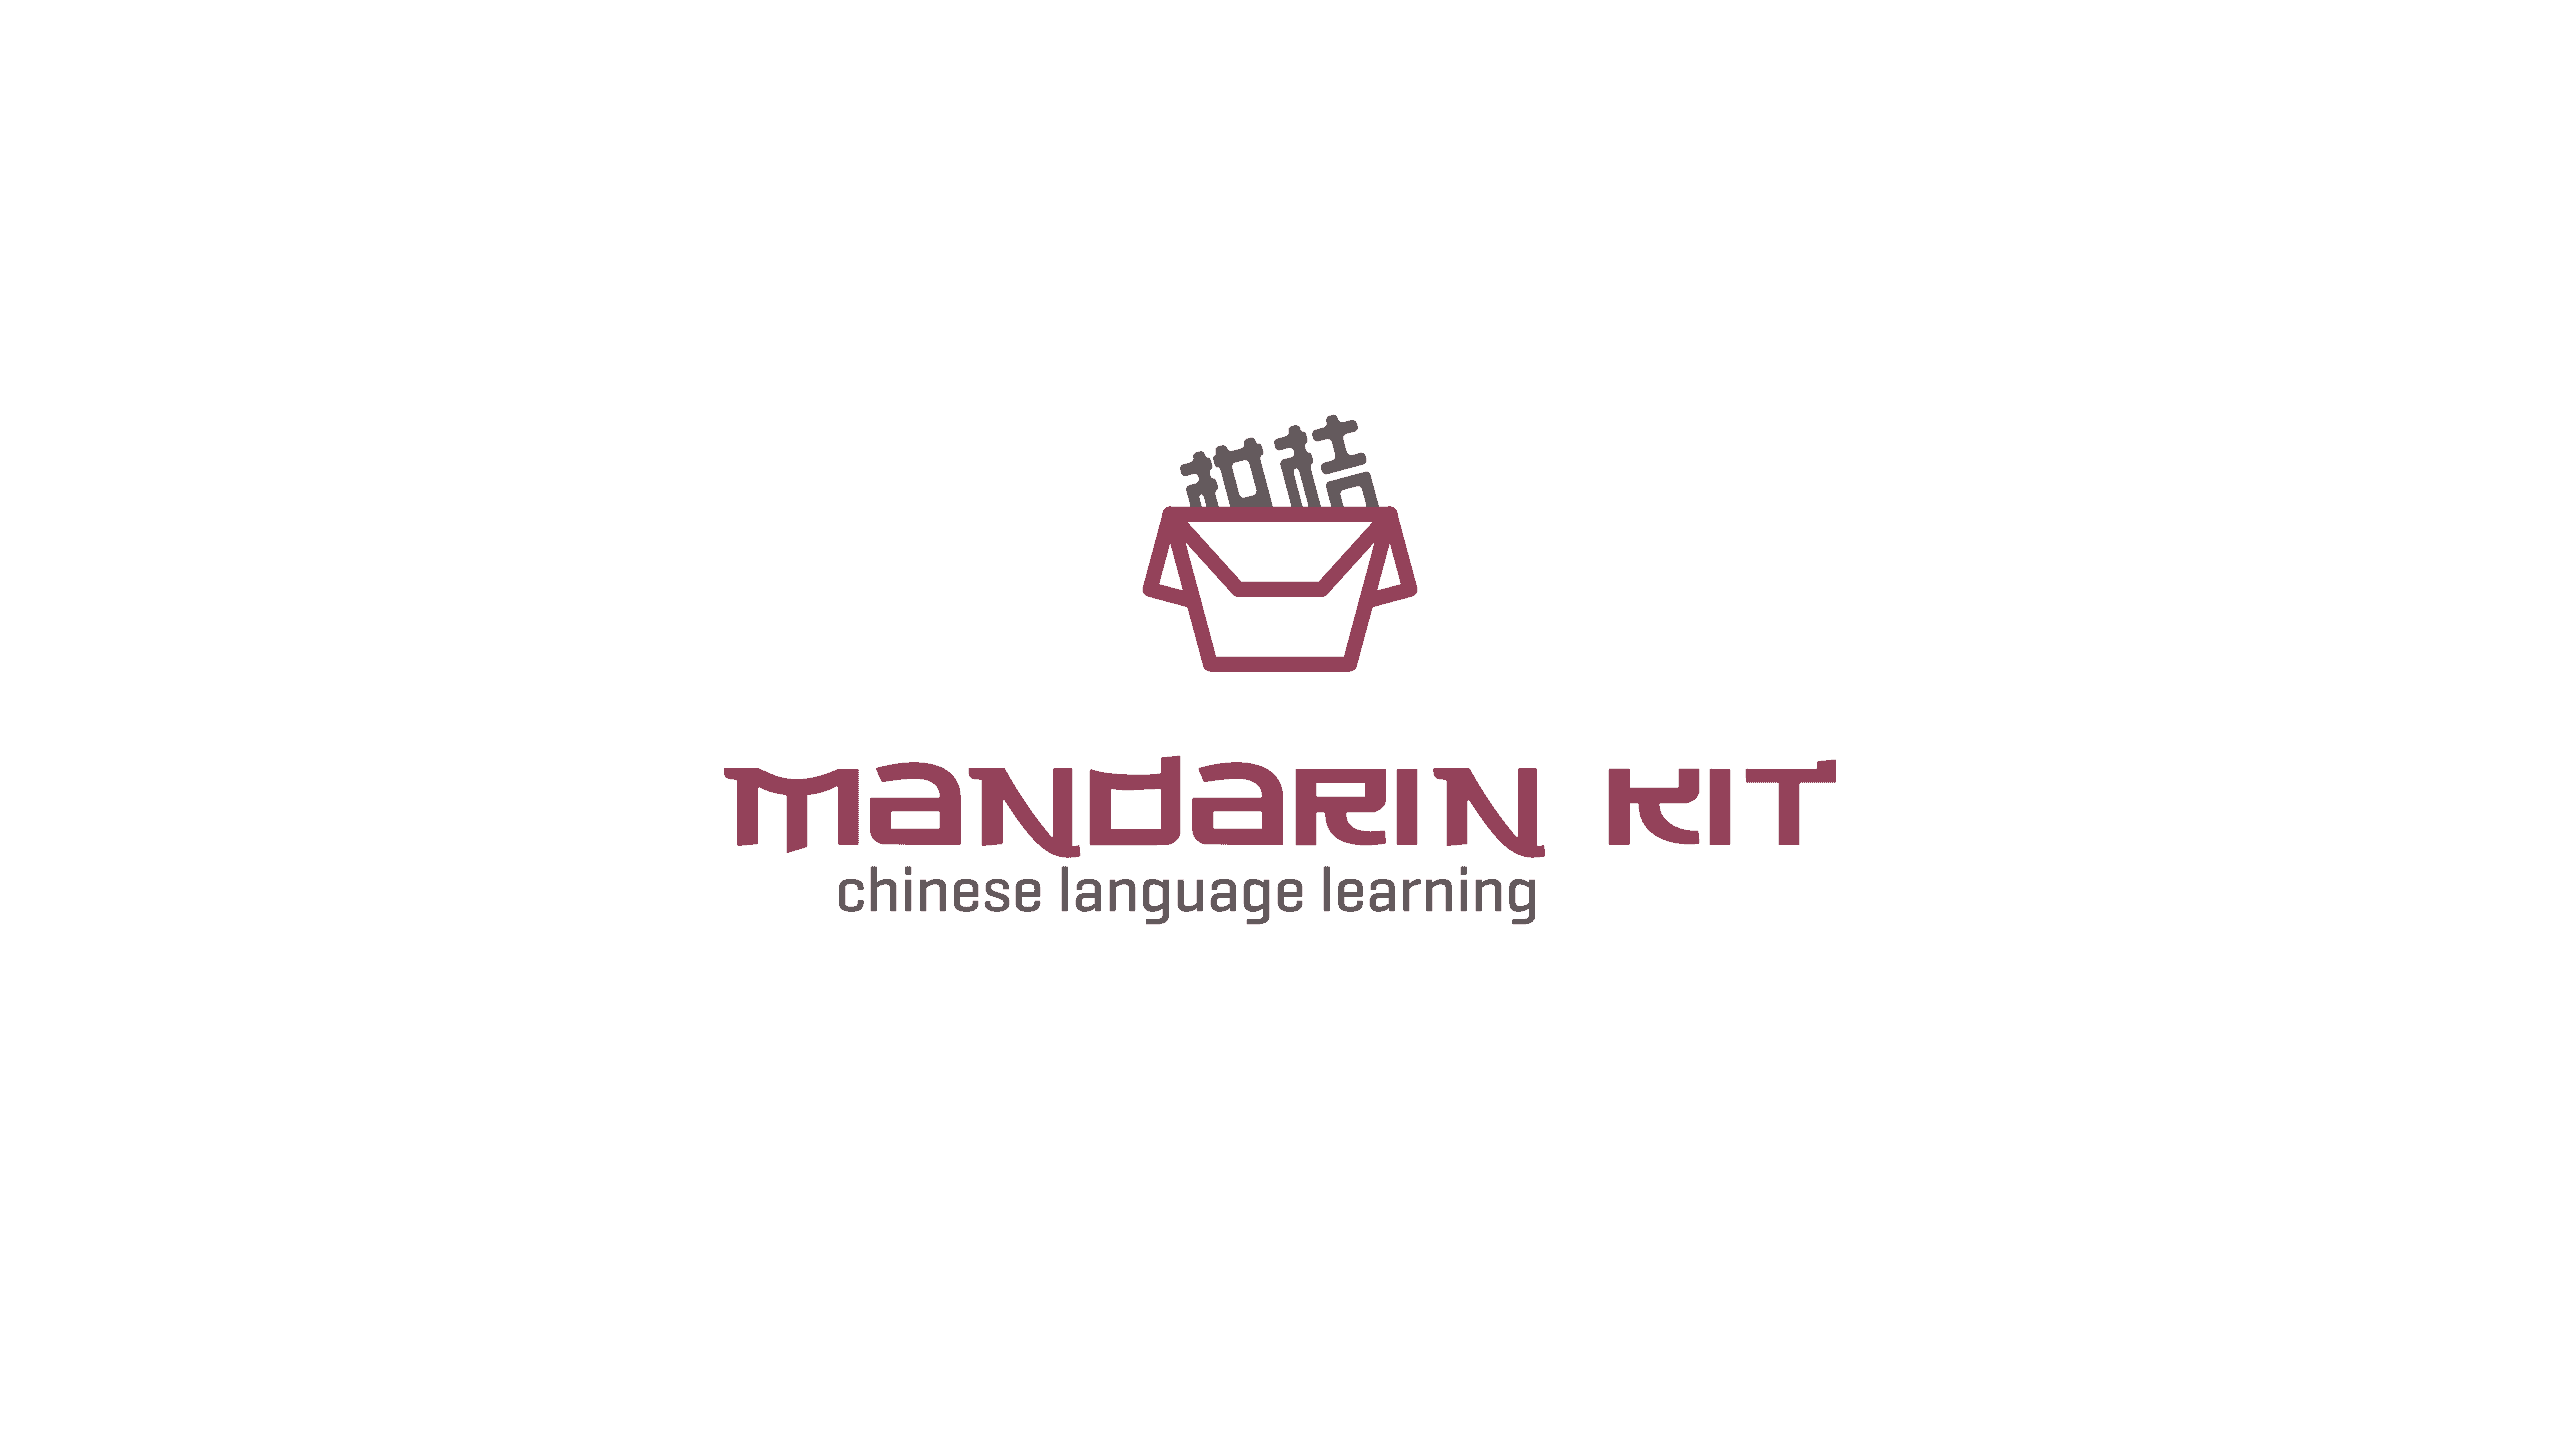 Mandarin kit